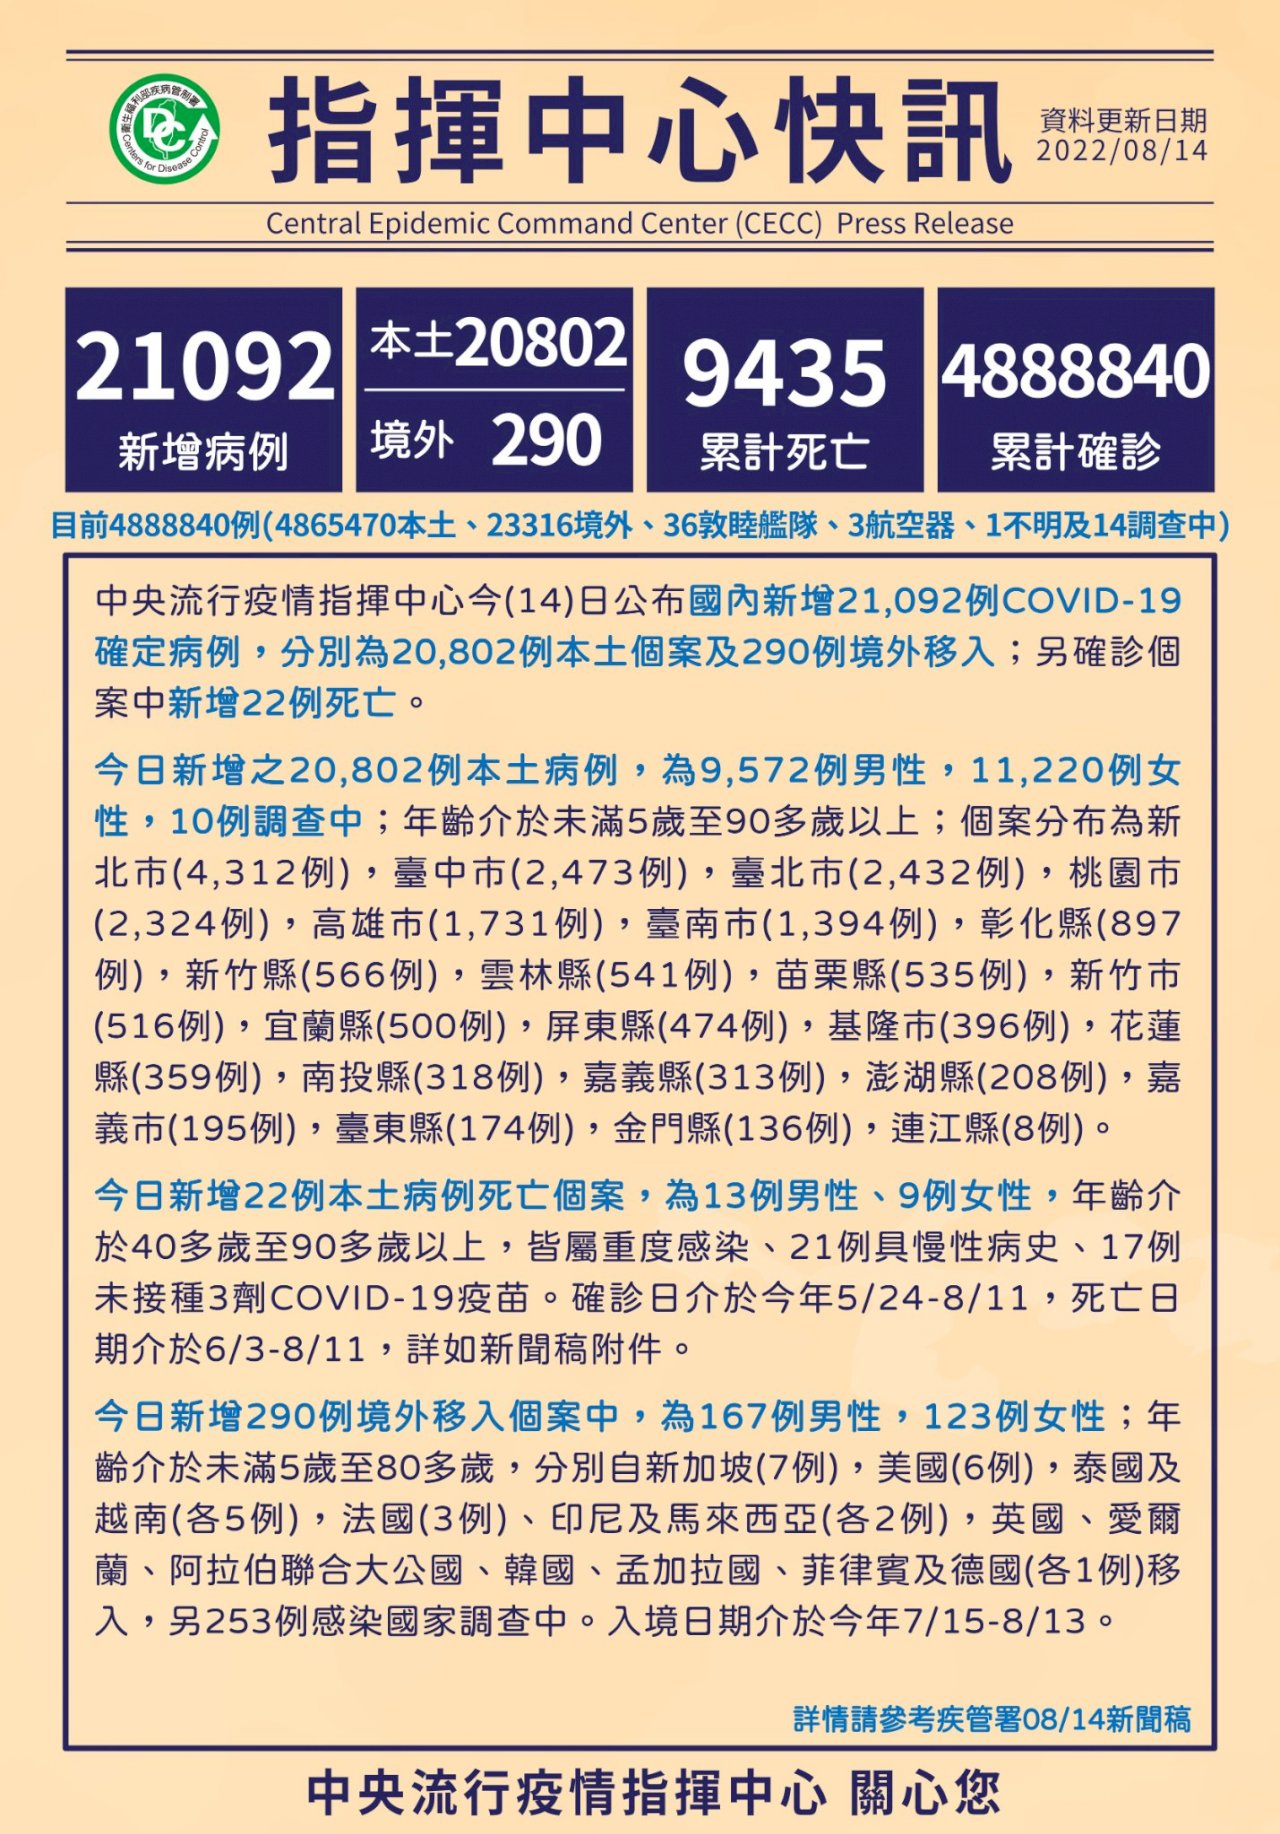 14/8, Đài Loan ghi nhận thêm 20.802 ca nhiễm COVID-19 trong nước, 290 ca từ nước ngoài, thêm 22 trường hợp tử vong